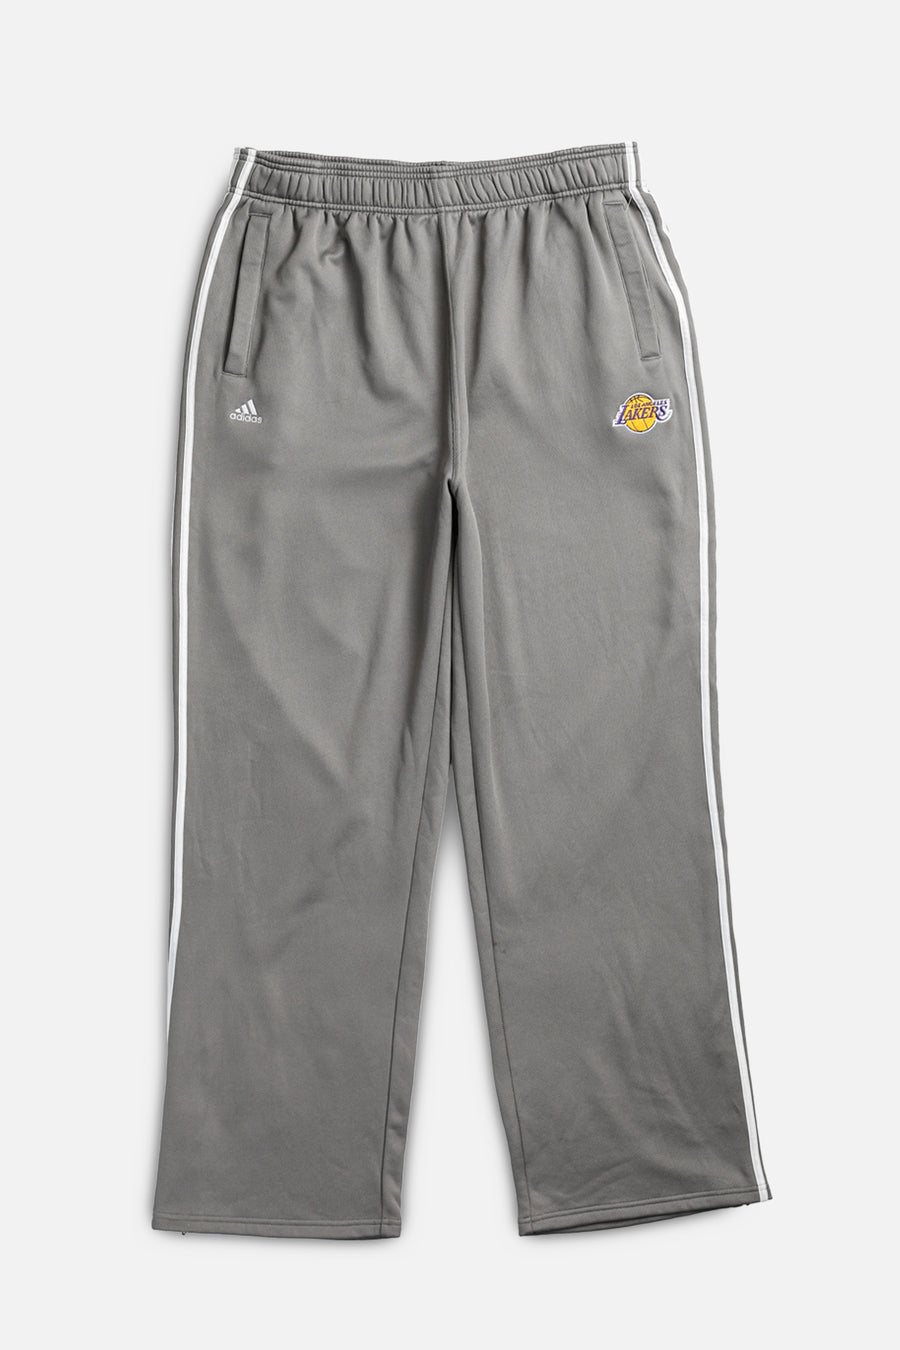 Vintage Adidas LA Lakers Track Pants - XXL